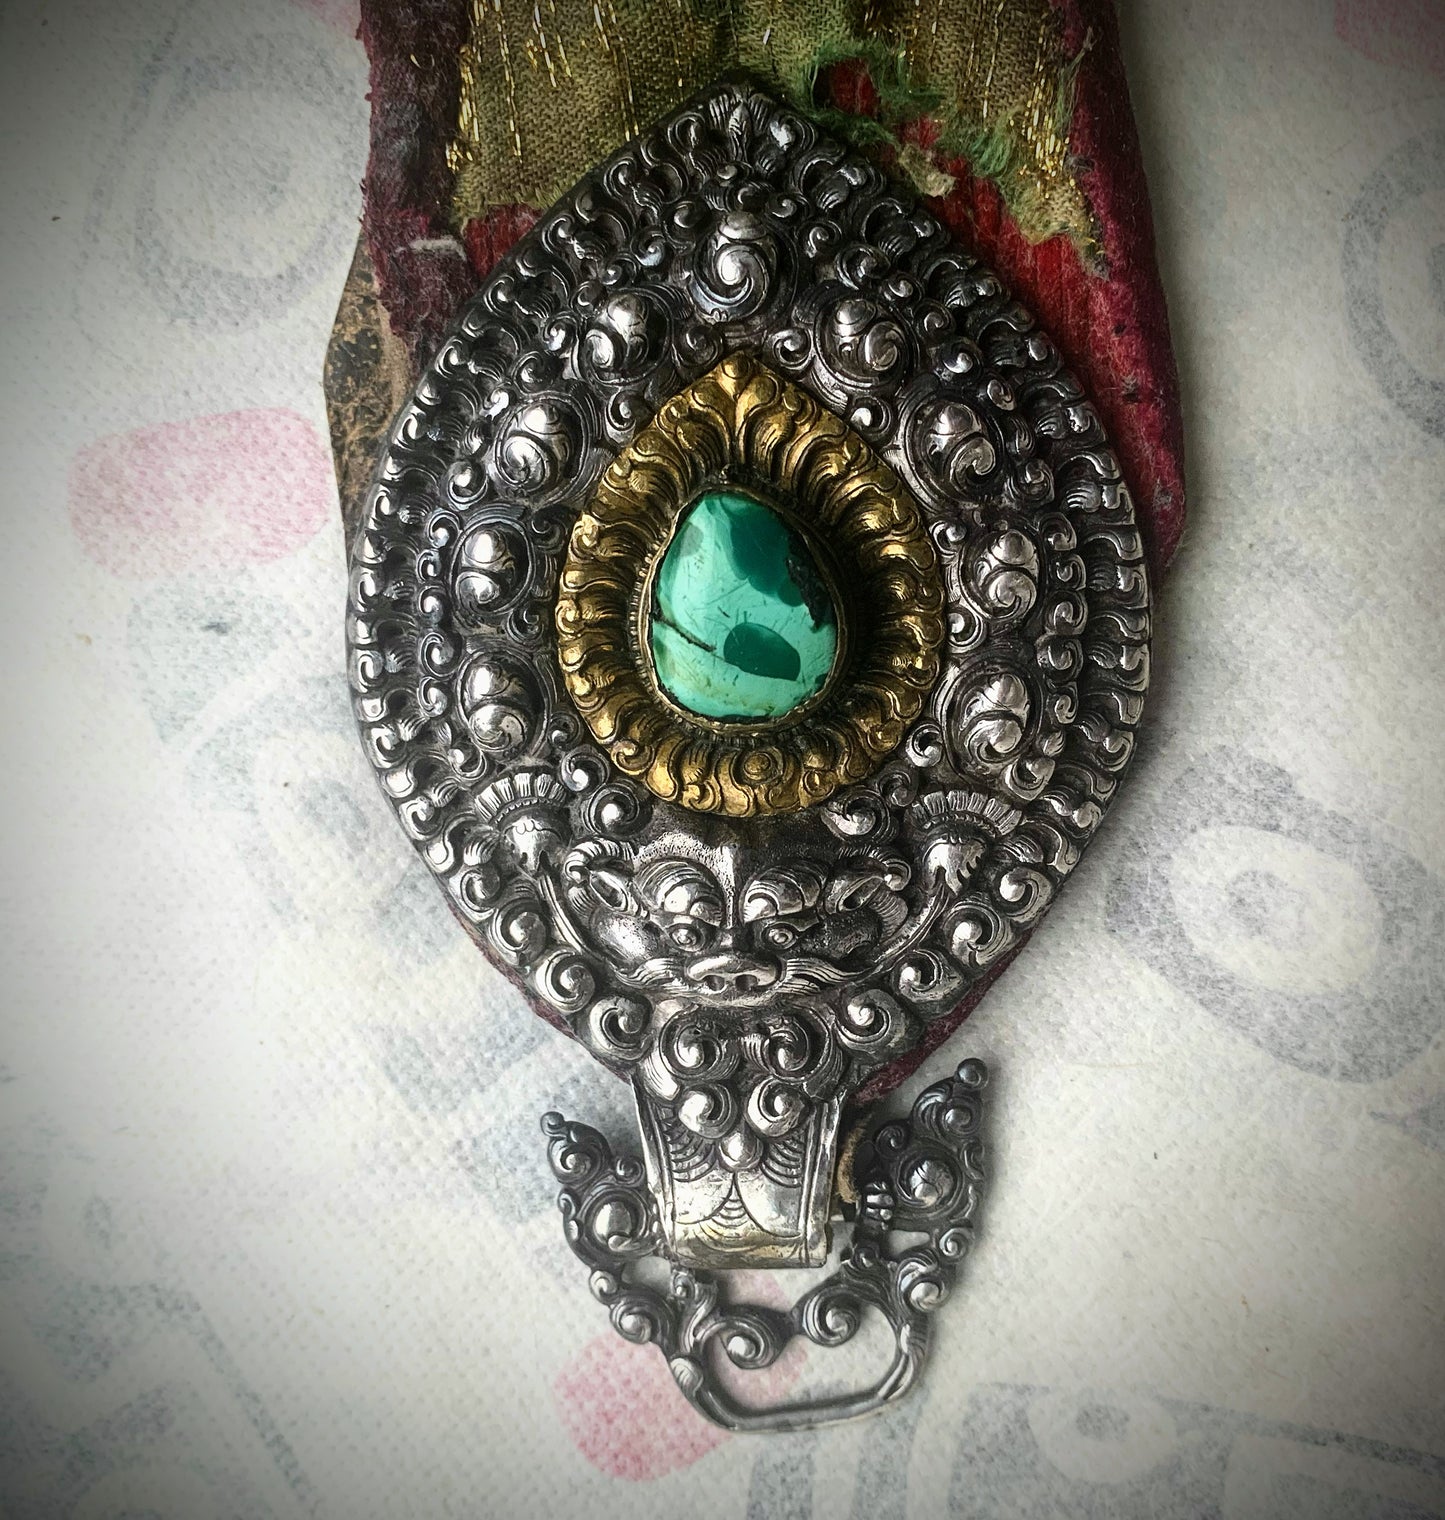 Antique Tibetan belt pendants